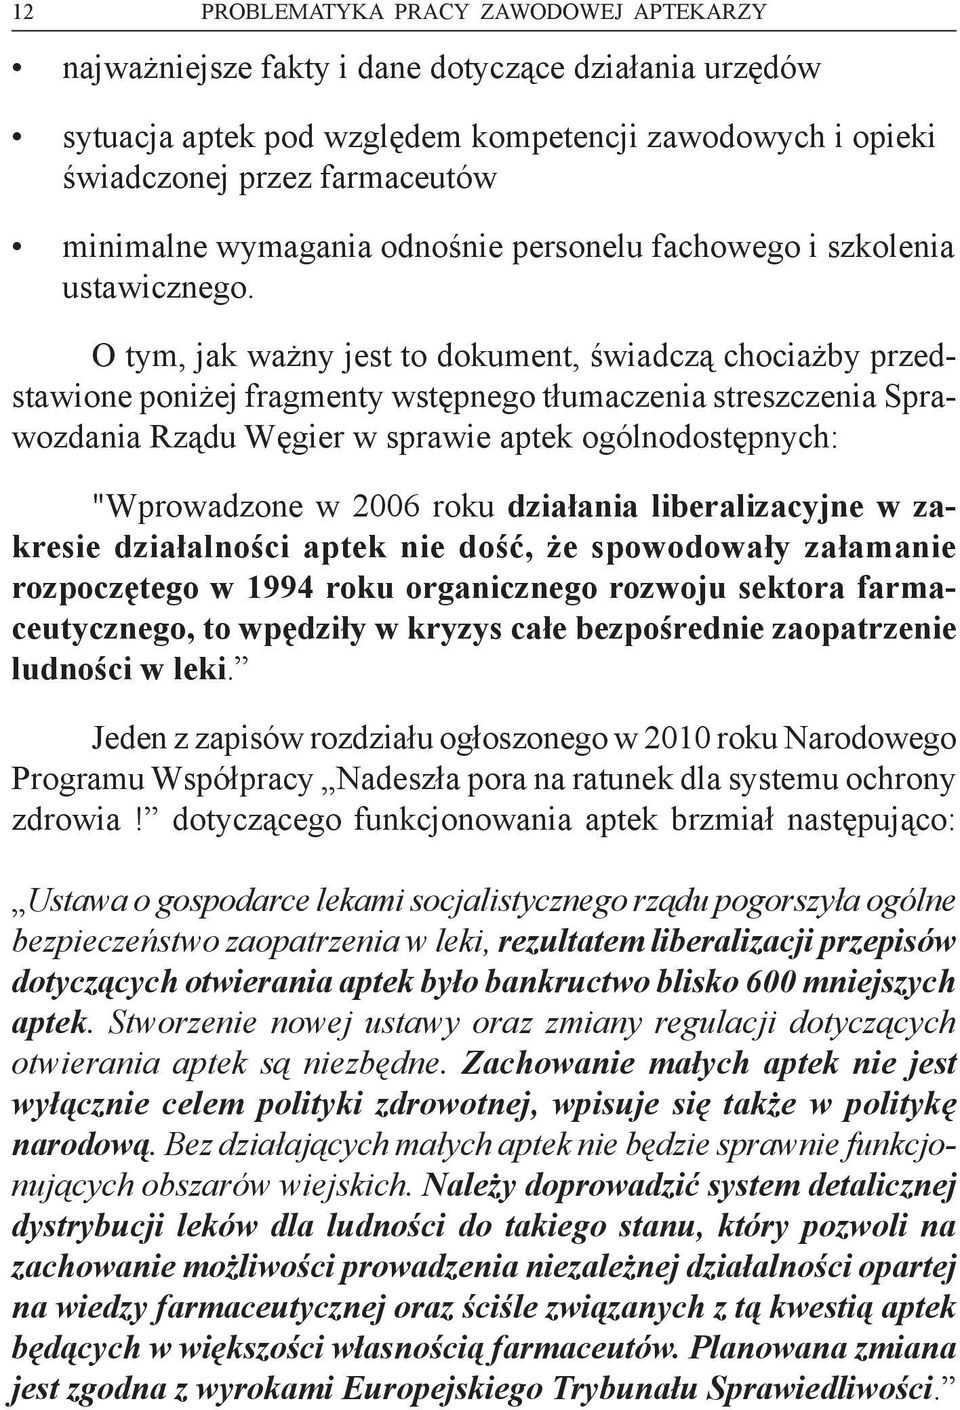 O tym, jak ważny jest to dokument, świadczą chociażby przedstawione poniżej fragmenty wstępnego tłumaczenia streszczenia Sprawozdania Rządu Węgier w sprawie aptek ogólnodostępnych: "Wprowadzone w